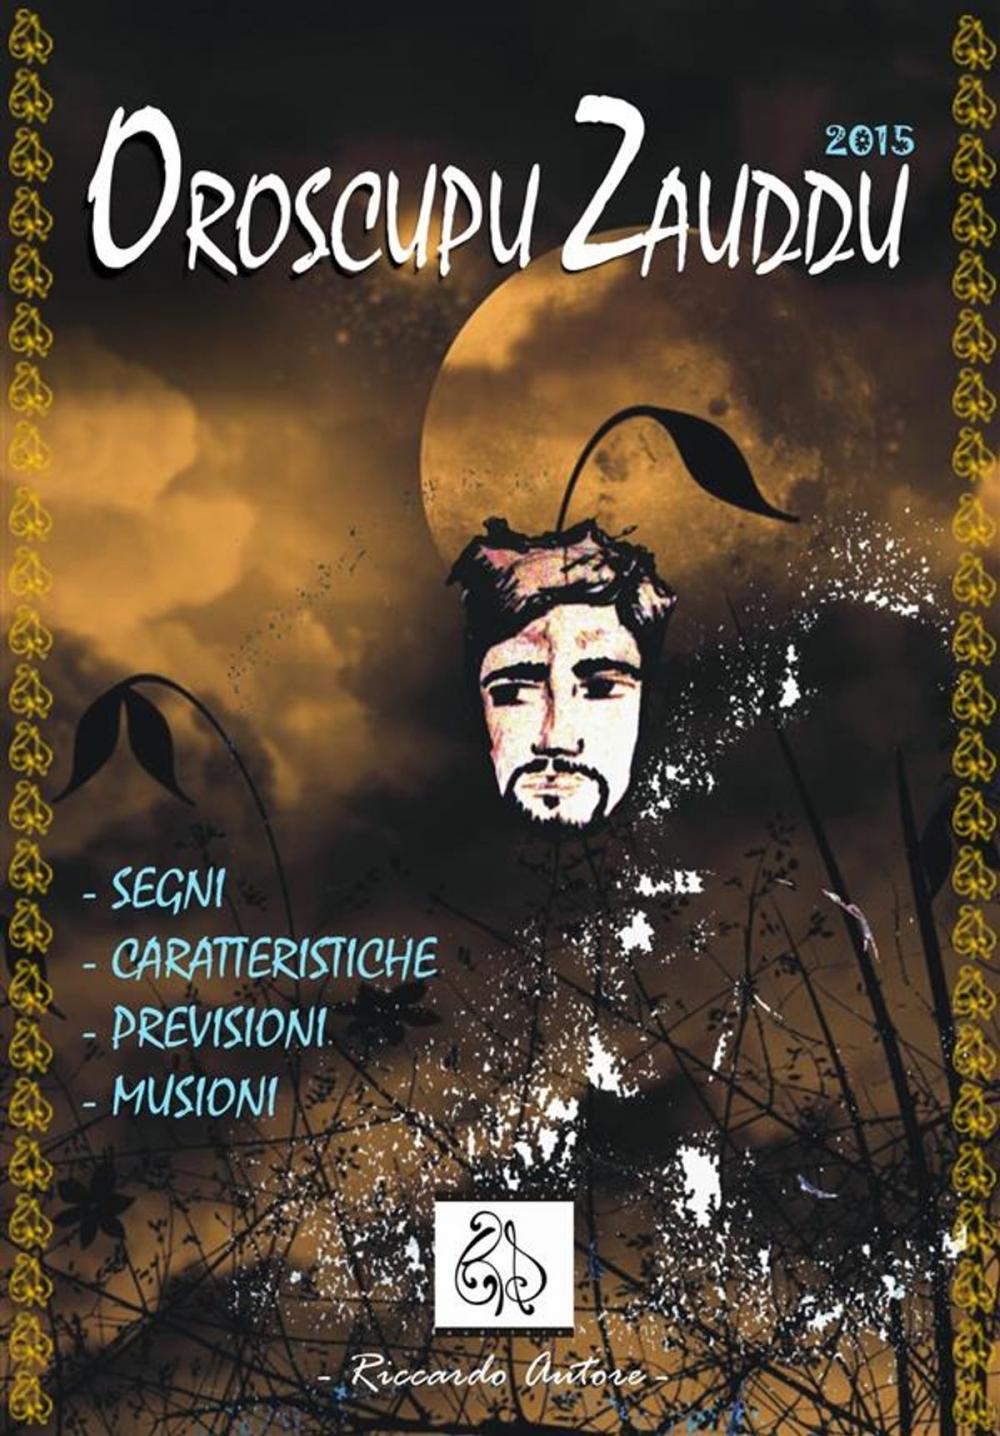 Big bigCover of Oroscupu Zzauddu 2015